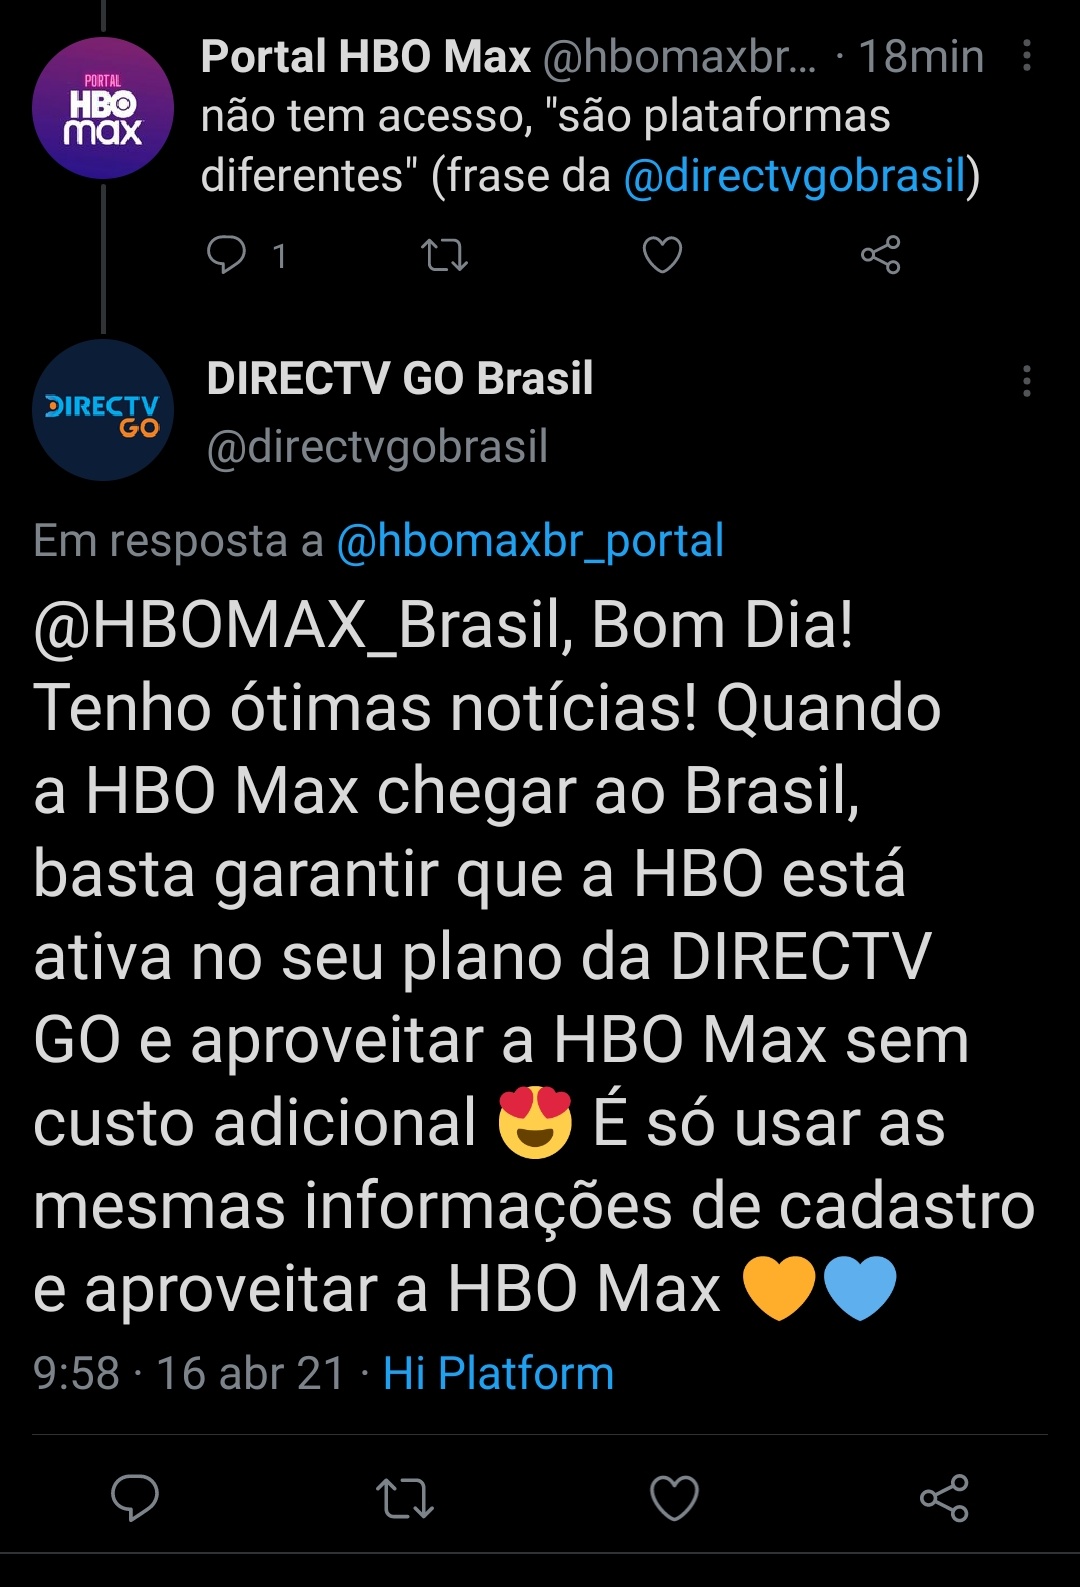 HBO Max - Serviço EzGO4PRXMAQamsr?format=jpg&name=large